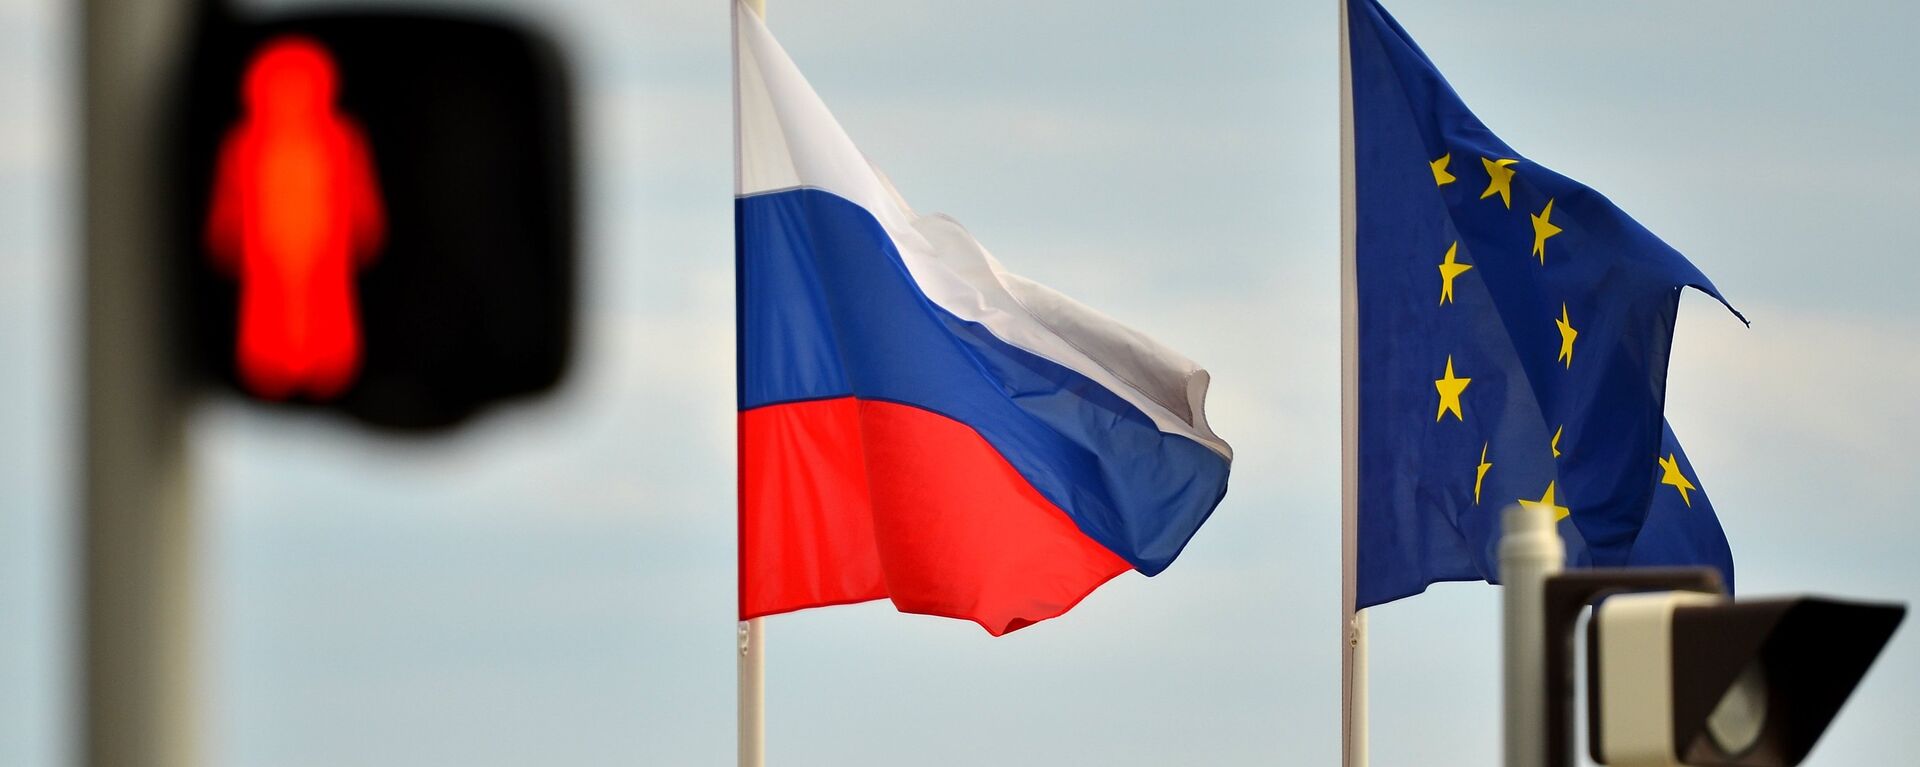 Banderas de Rusia y la UE - Sputnik Mundo, 1920, 08.04.2021